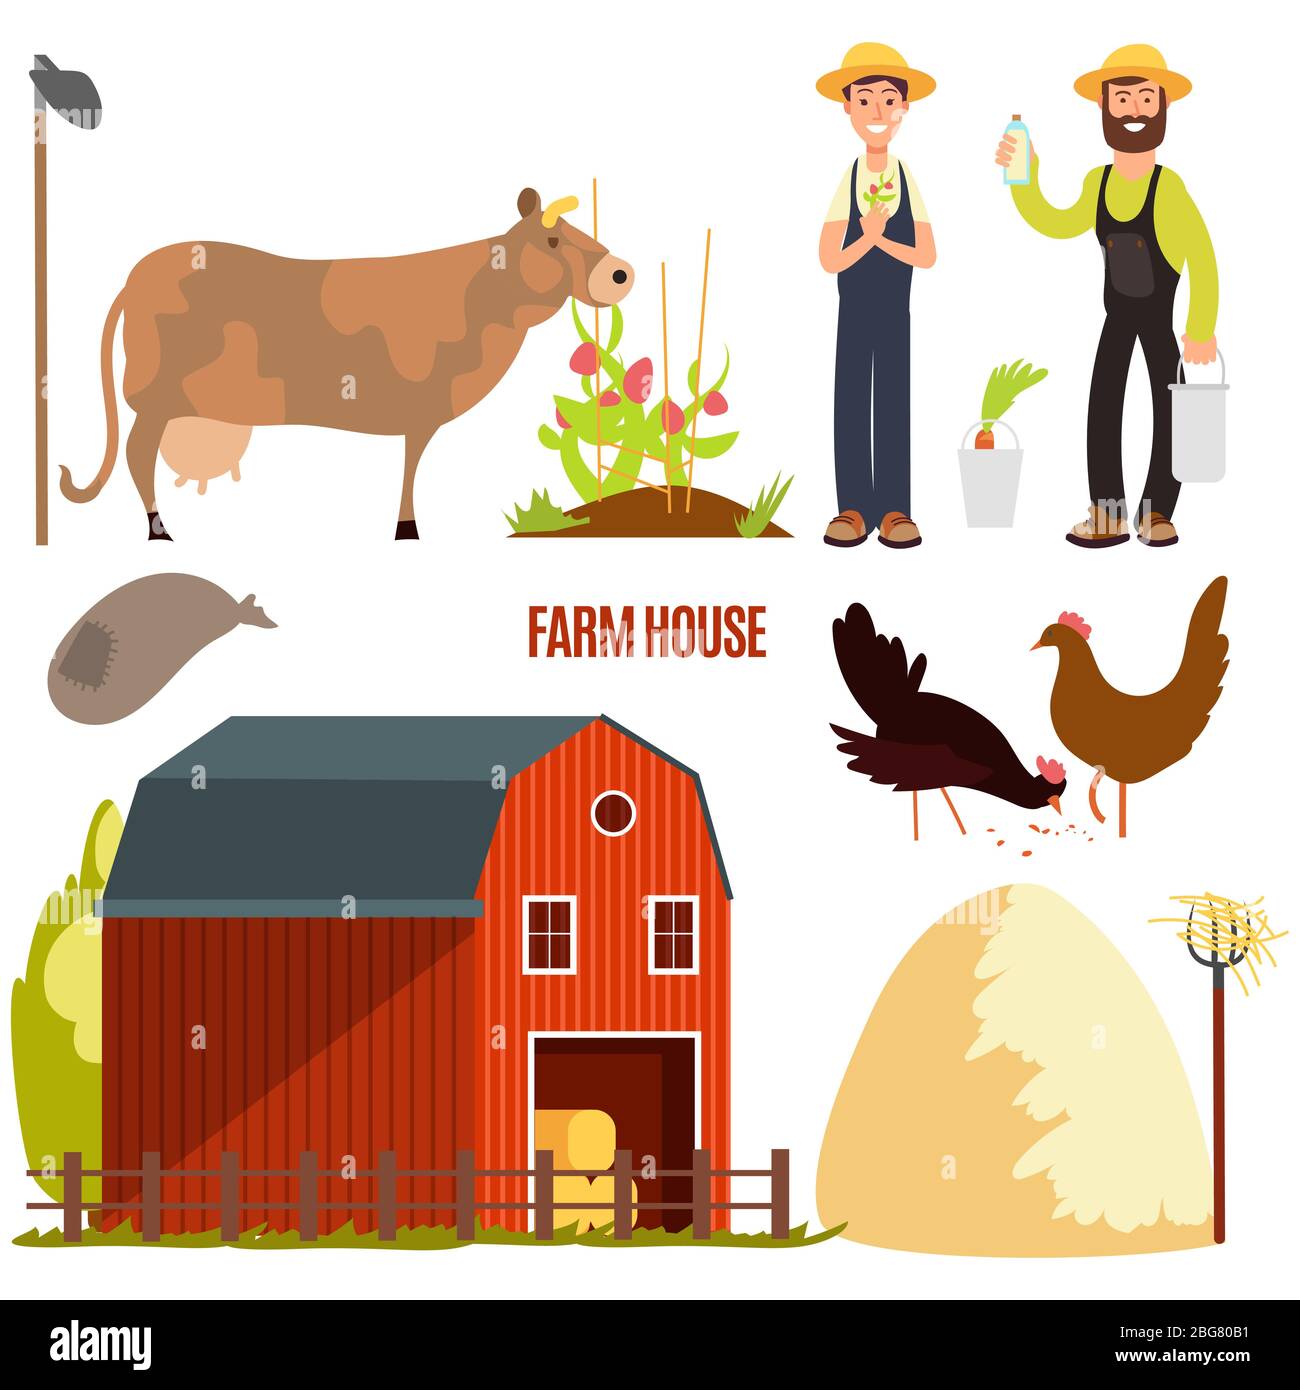 Landwirtschaft. Bauernhof Cartoon Charakter Vektor-Elemente. Landwirtschaftliche Nutztiere und Landwirtschaft, Scheune und Huhn, Kuh und Landwirtschaft Illustration Stock Vektor